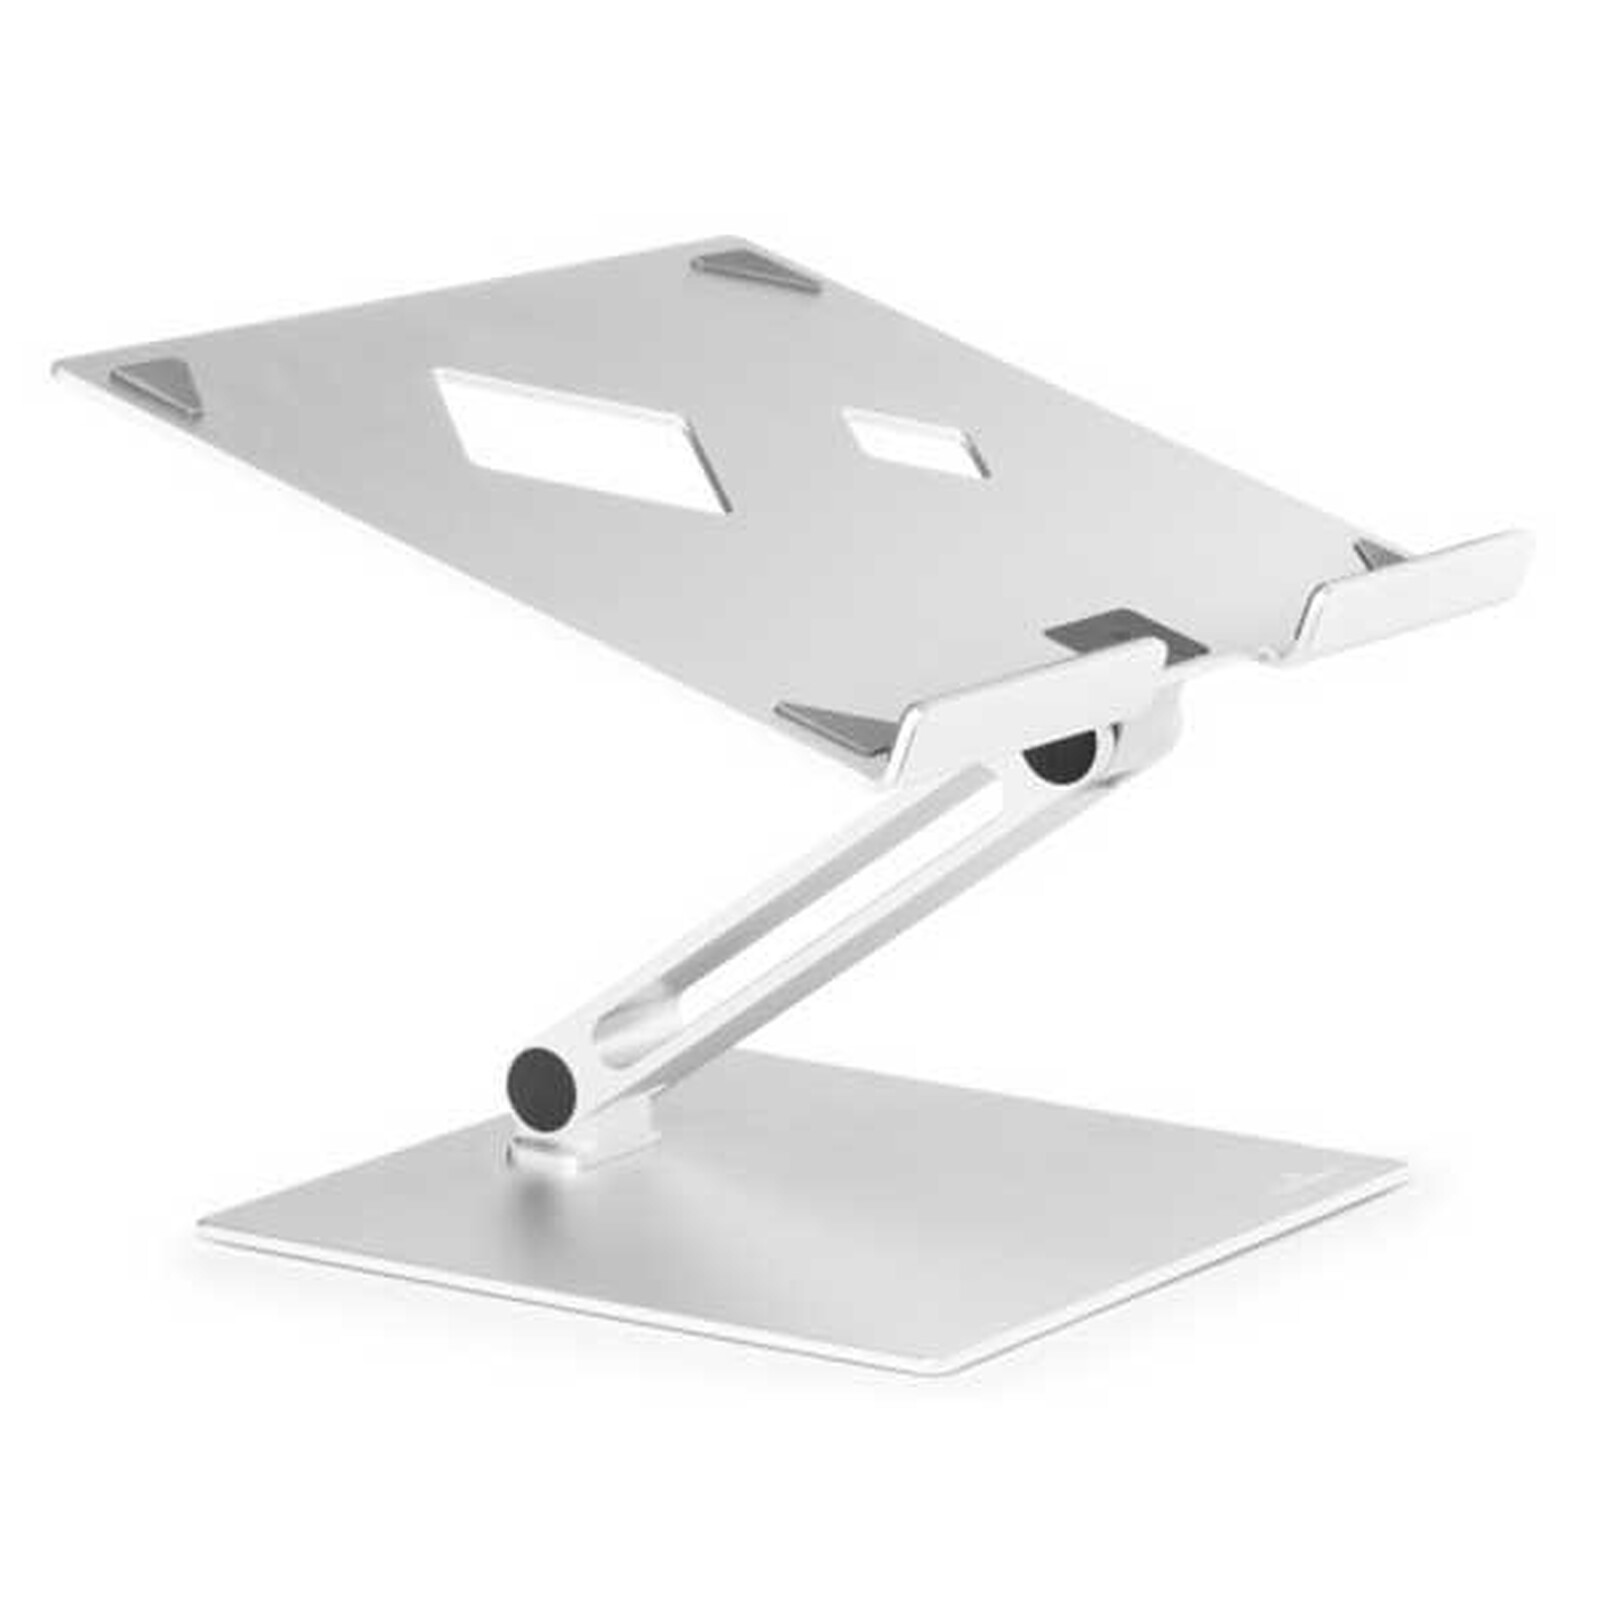 Support en aluminium pour ordinateur portable,avec ventilateur de